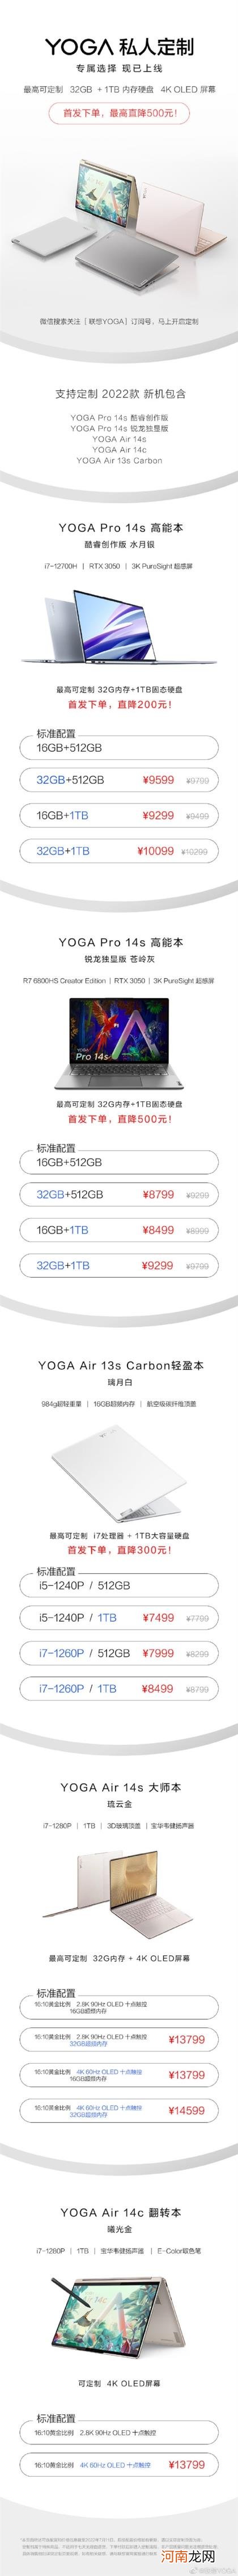 最高32GB+1TB配置拉满：联想YOGA系列上线私人订制服务